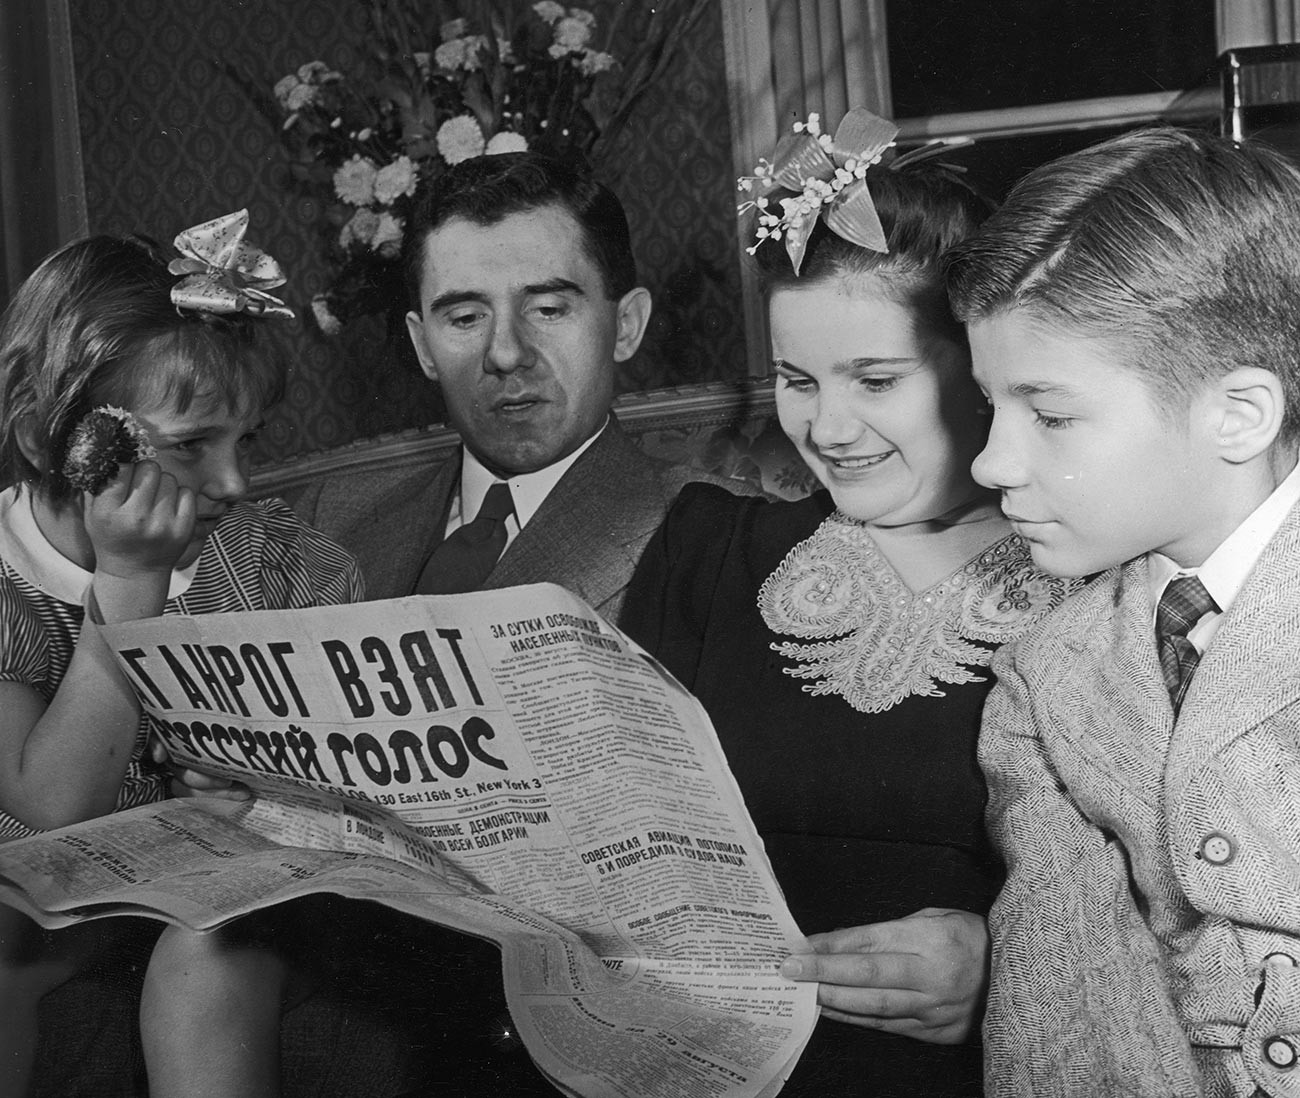 Novi sovjetski veleposlanik v ZDA Andrej Gromiko v svojem diplomatskem stanovanju v Washingtonu skupaj z ženo Lidijo, hčerko Emilijo in sinom Anatolijem, 1944